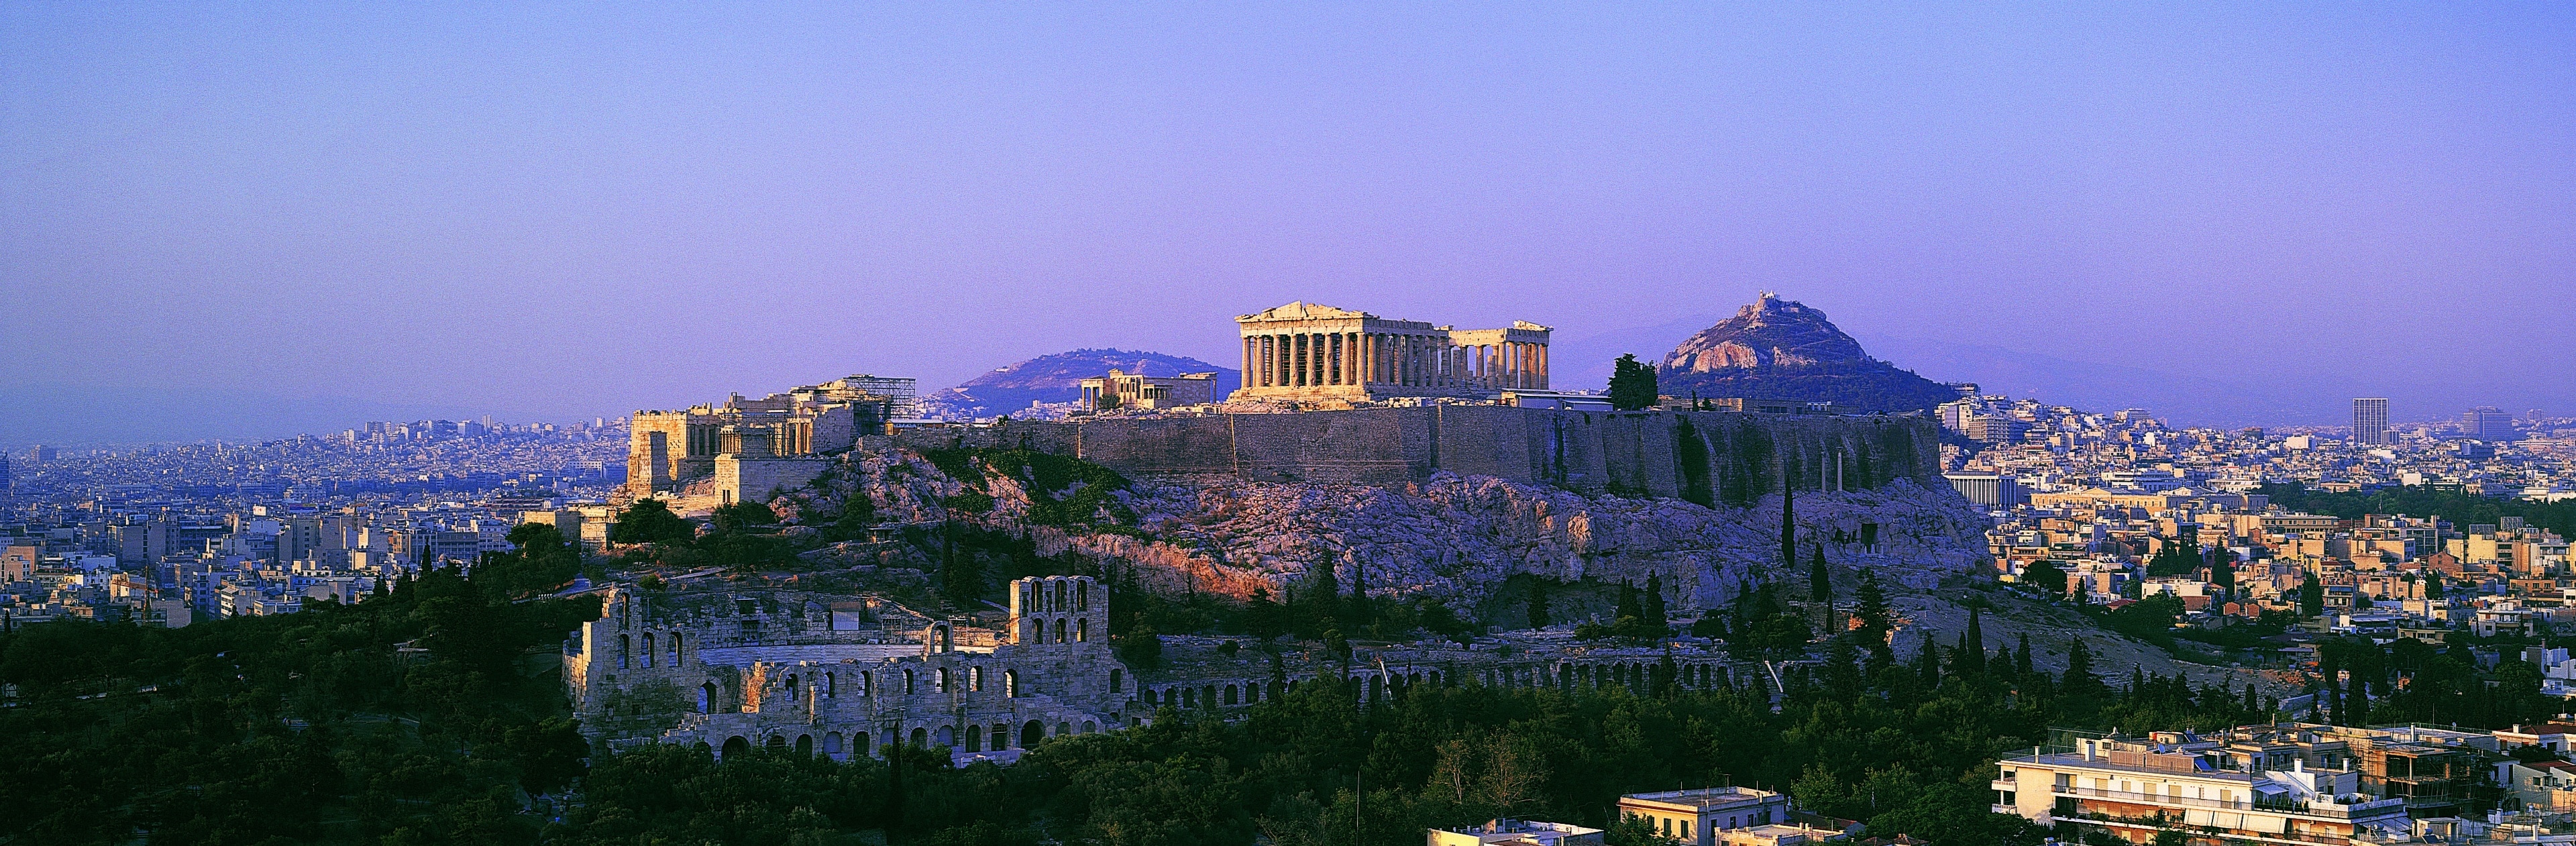 Tuffatevi nel grande passato della civiltà mediterranea ed esplorate il Partenone, il più grande tempio in stile dorico della Grecia e luogo simbolo degli antichi miti classici, originariamente dedicato ad Atena, la dea guerriera.